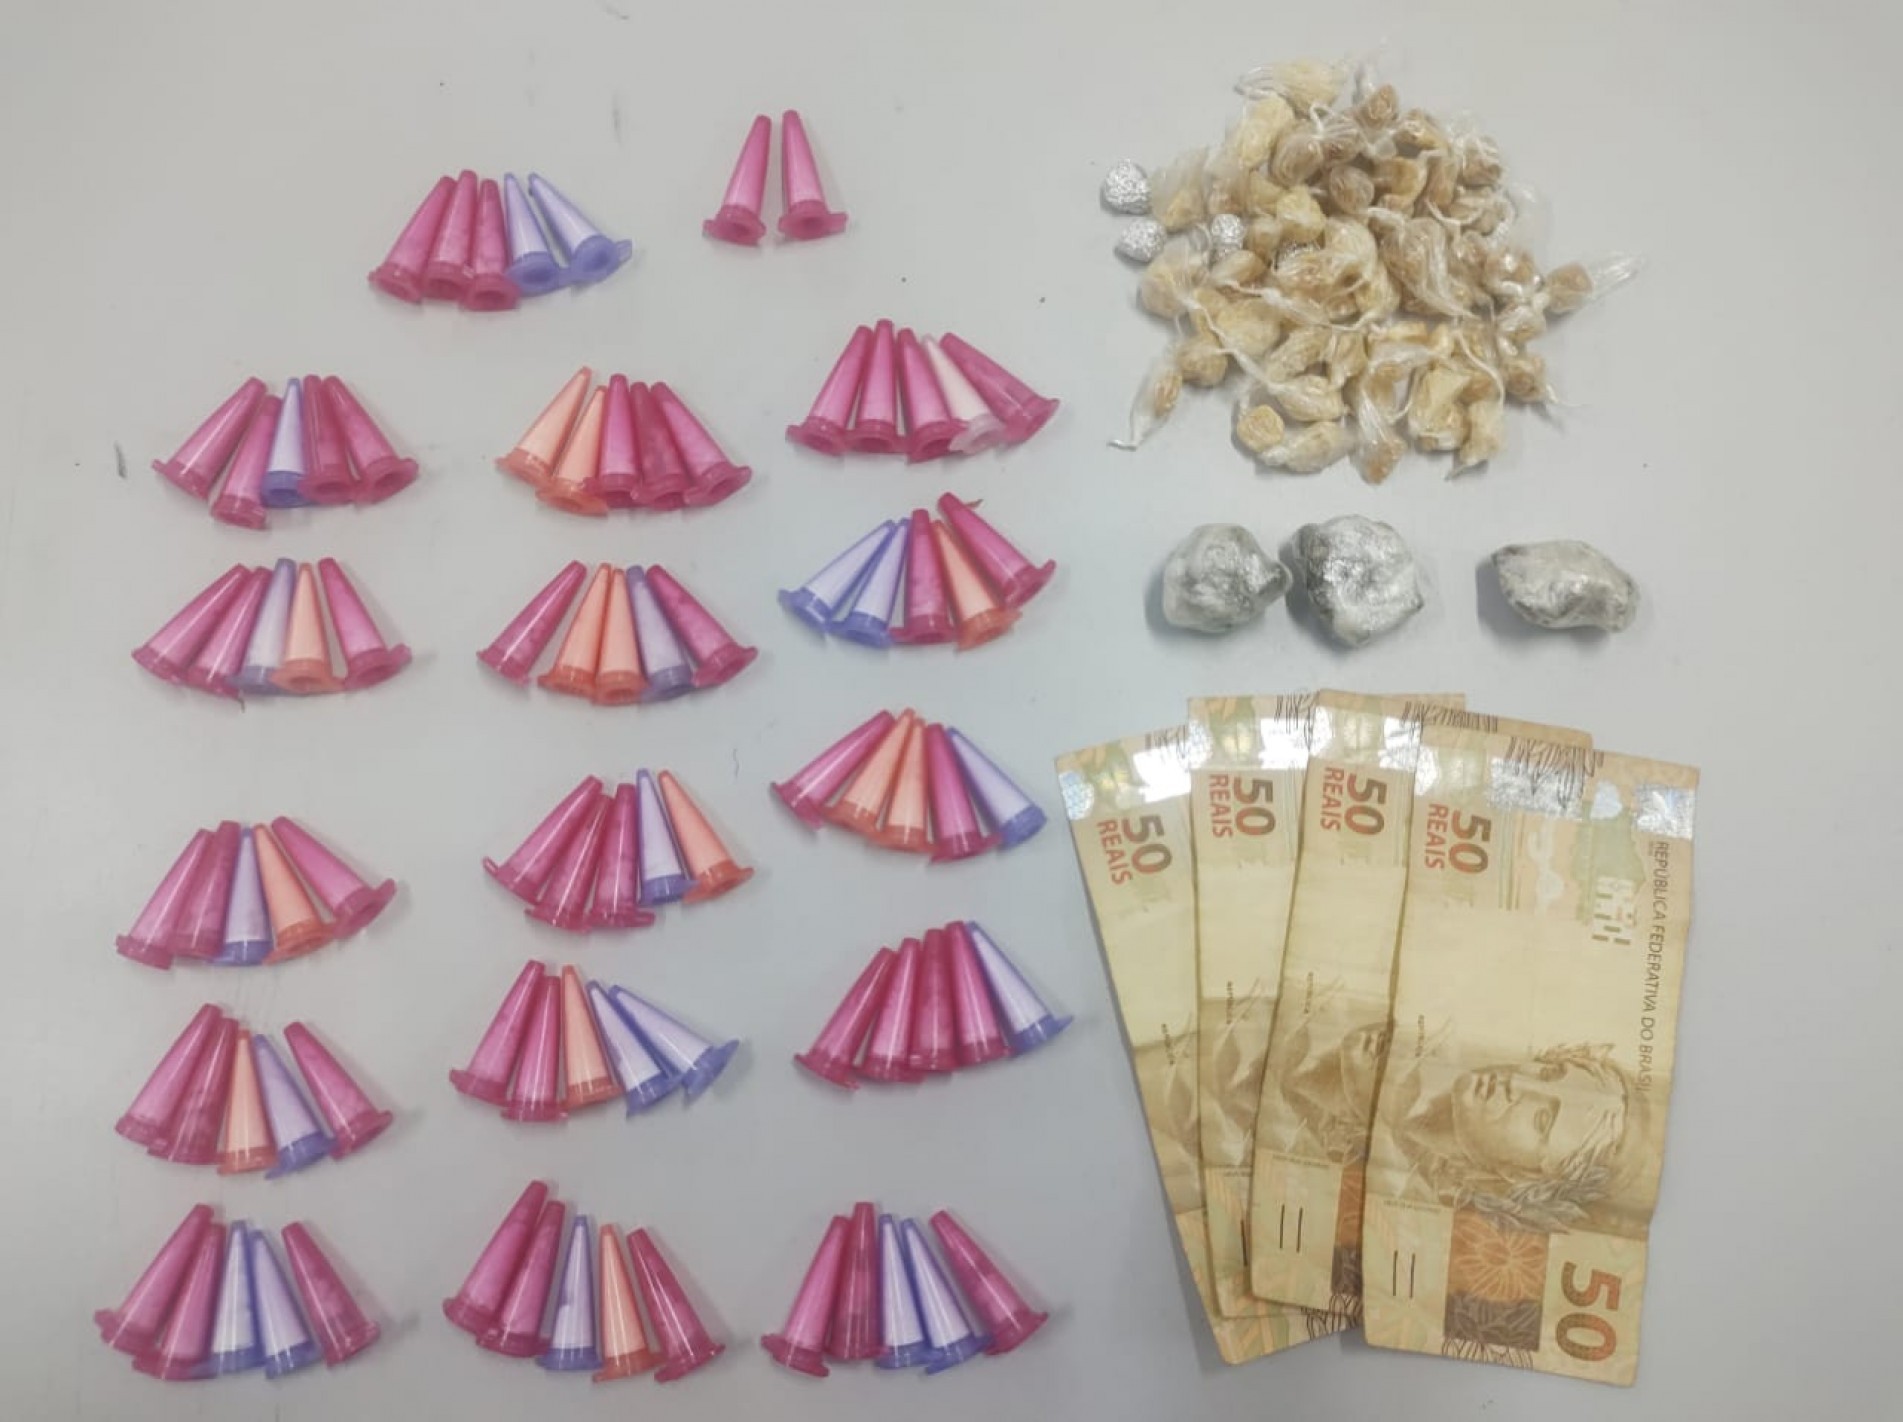 Foram encontrados 82 pinos de cocaína, 68 pedras de crack, três porções de maconha e a quantia de R$200,00 em dinheiro